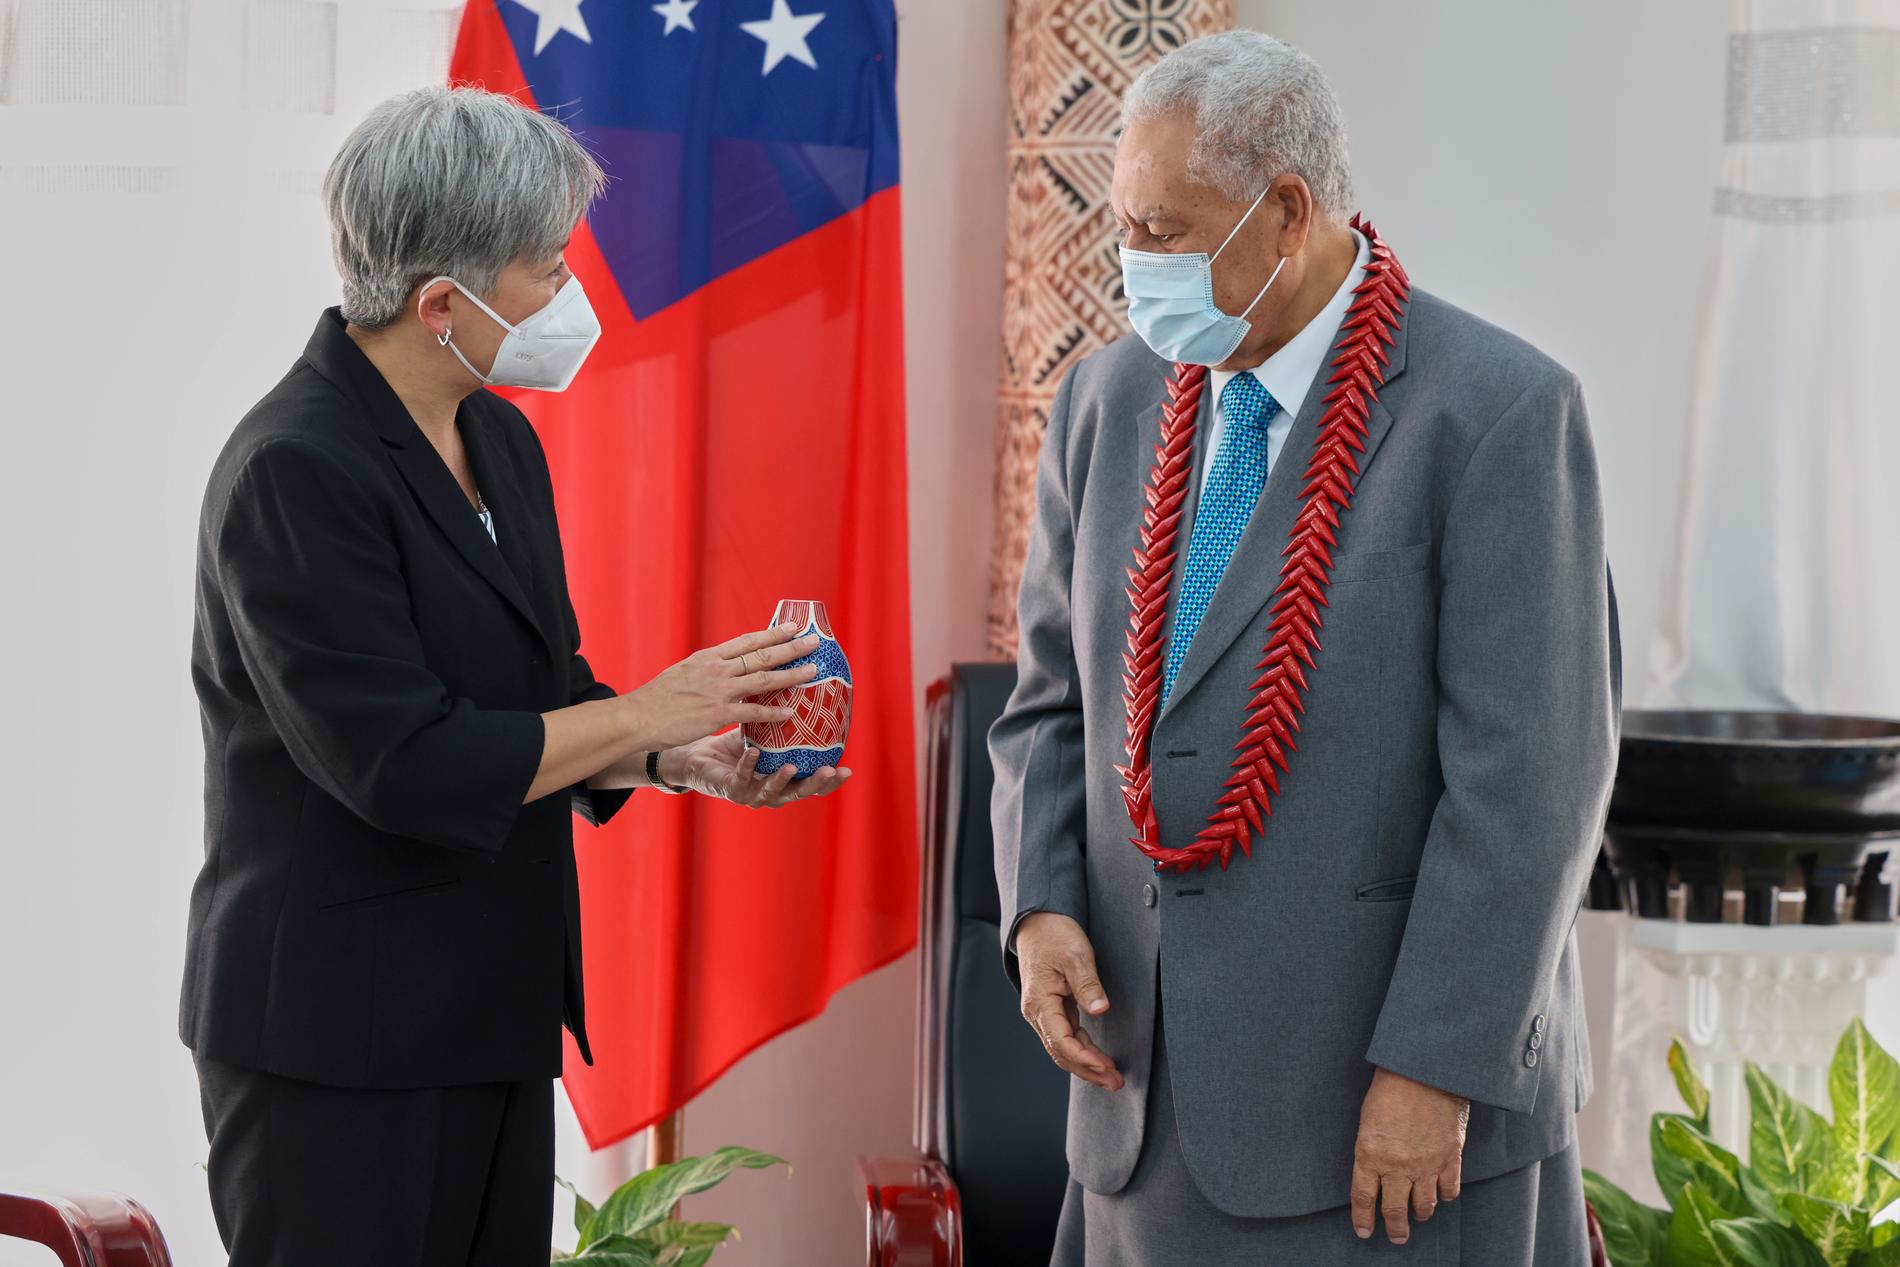 Penny Wong, Australiens utrikesminister, överräcker en gåva till Samoas statschef Tuimalealiifano Vaaletoa Sualauvi II under besöket i öriket på torsdagen.